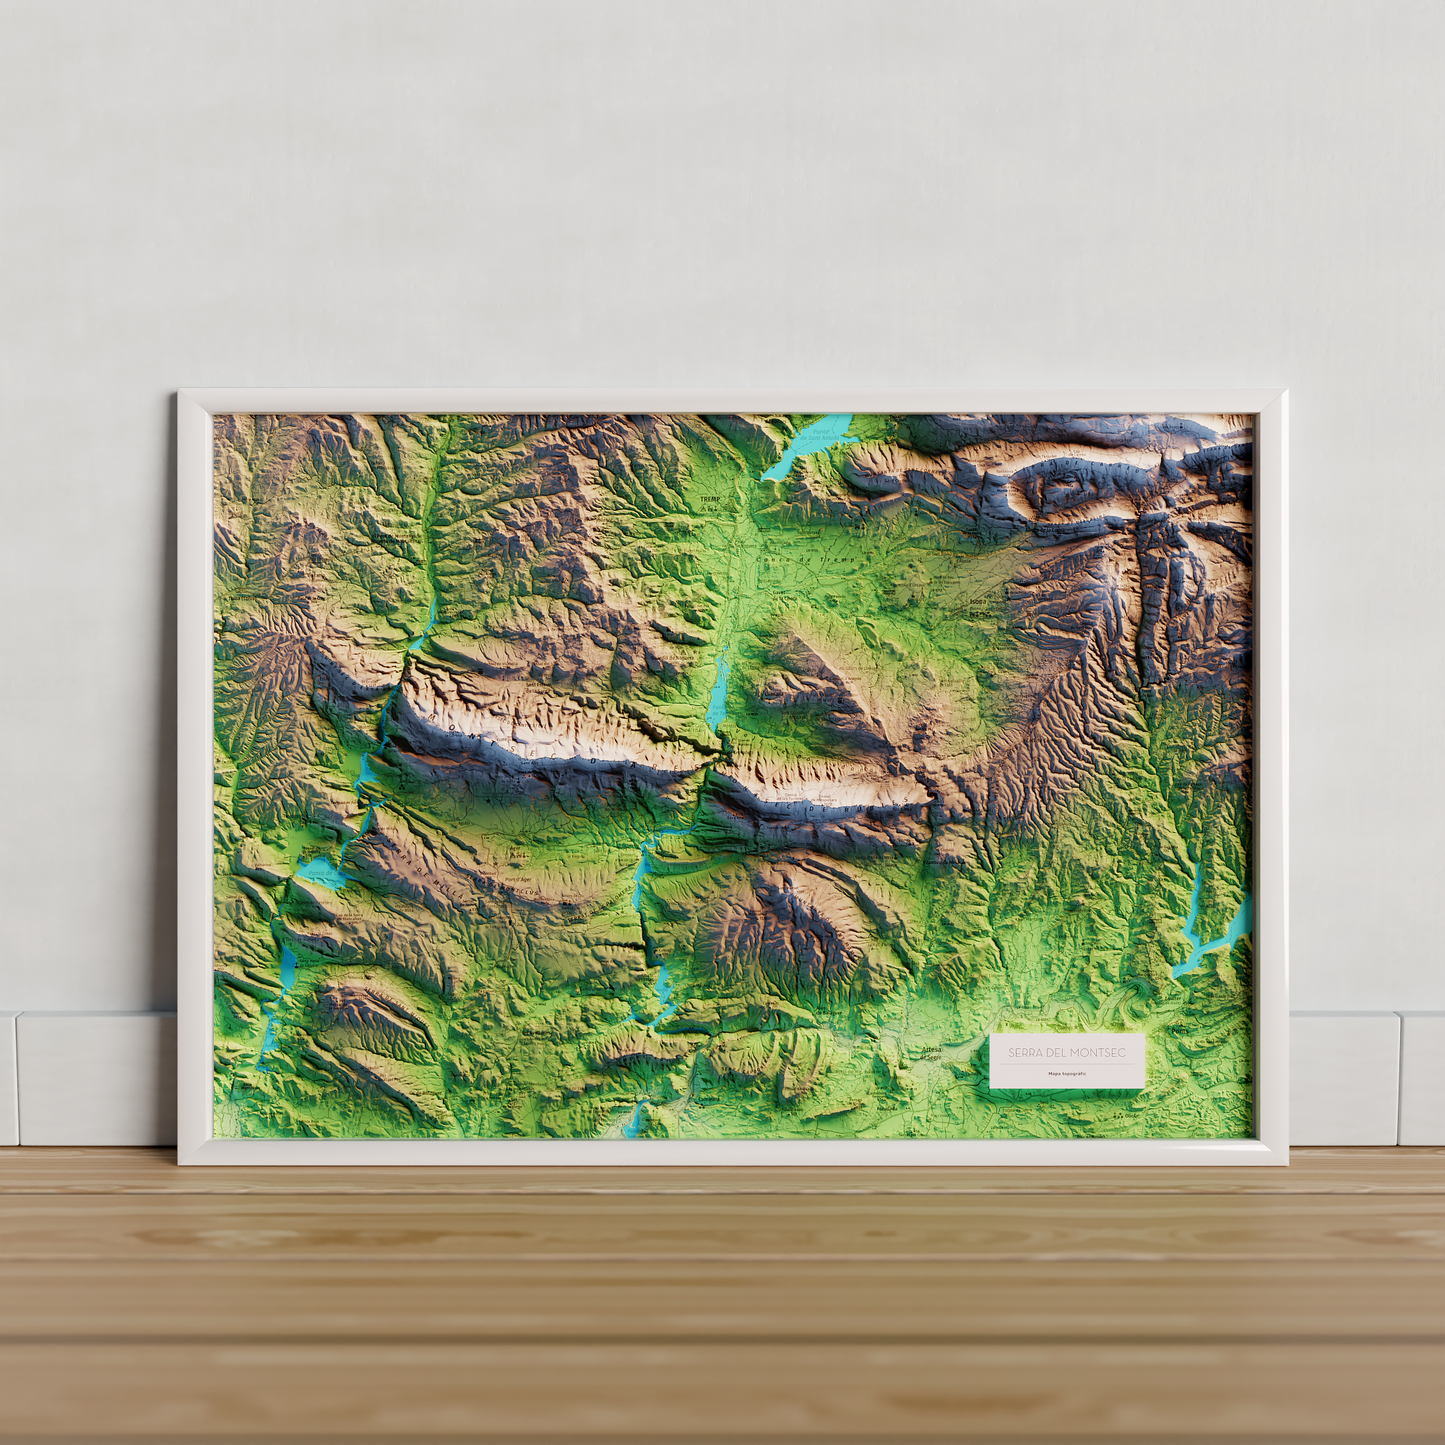 Detall del mapa imprès que inclou tota la Serra del Montsec, que inclou Montsec de l'Estall, Montsec d'Ares i Montsec de Rúbies (o de Meià). El mapa es presenta en un estil minimalista i elegant, amb un detallat modelatge d'elevacions terrestres mapa imprès que abasta tota la Serra del Montsec, que inclou Montsec de l'Estall, Montsec d'Ares i Montsec de Rúbies (o de Meià). El mapa es presenta en un estil minimalista i elegant, amb un detallat modelatge d'elevacions terrestres.